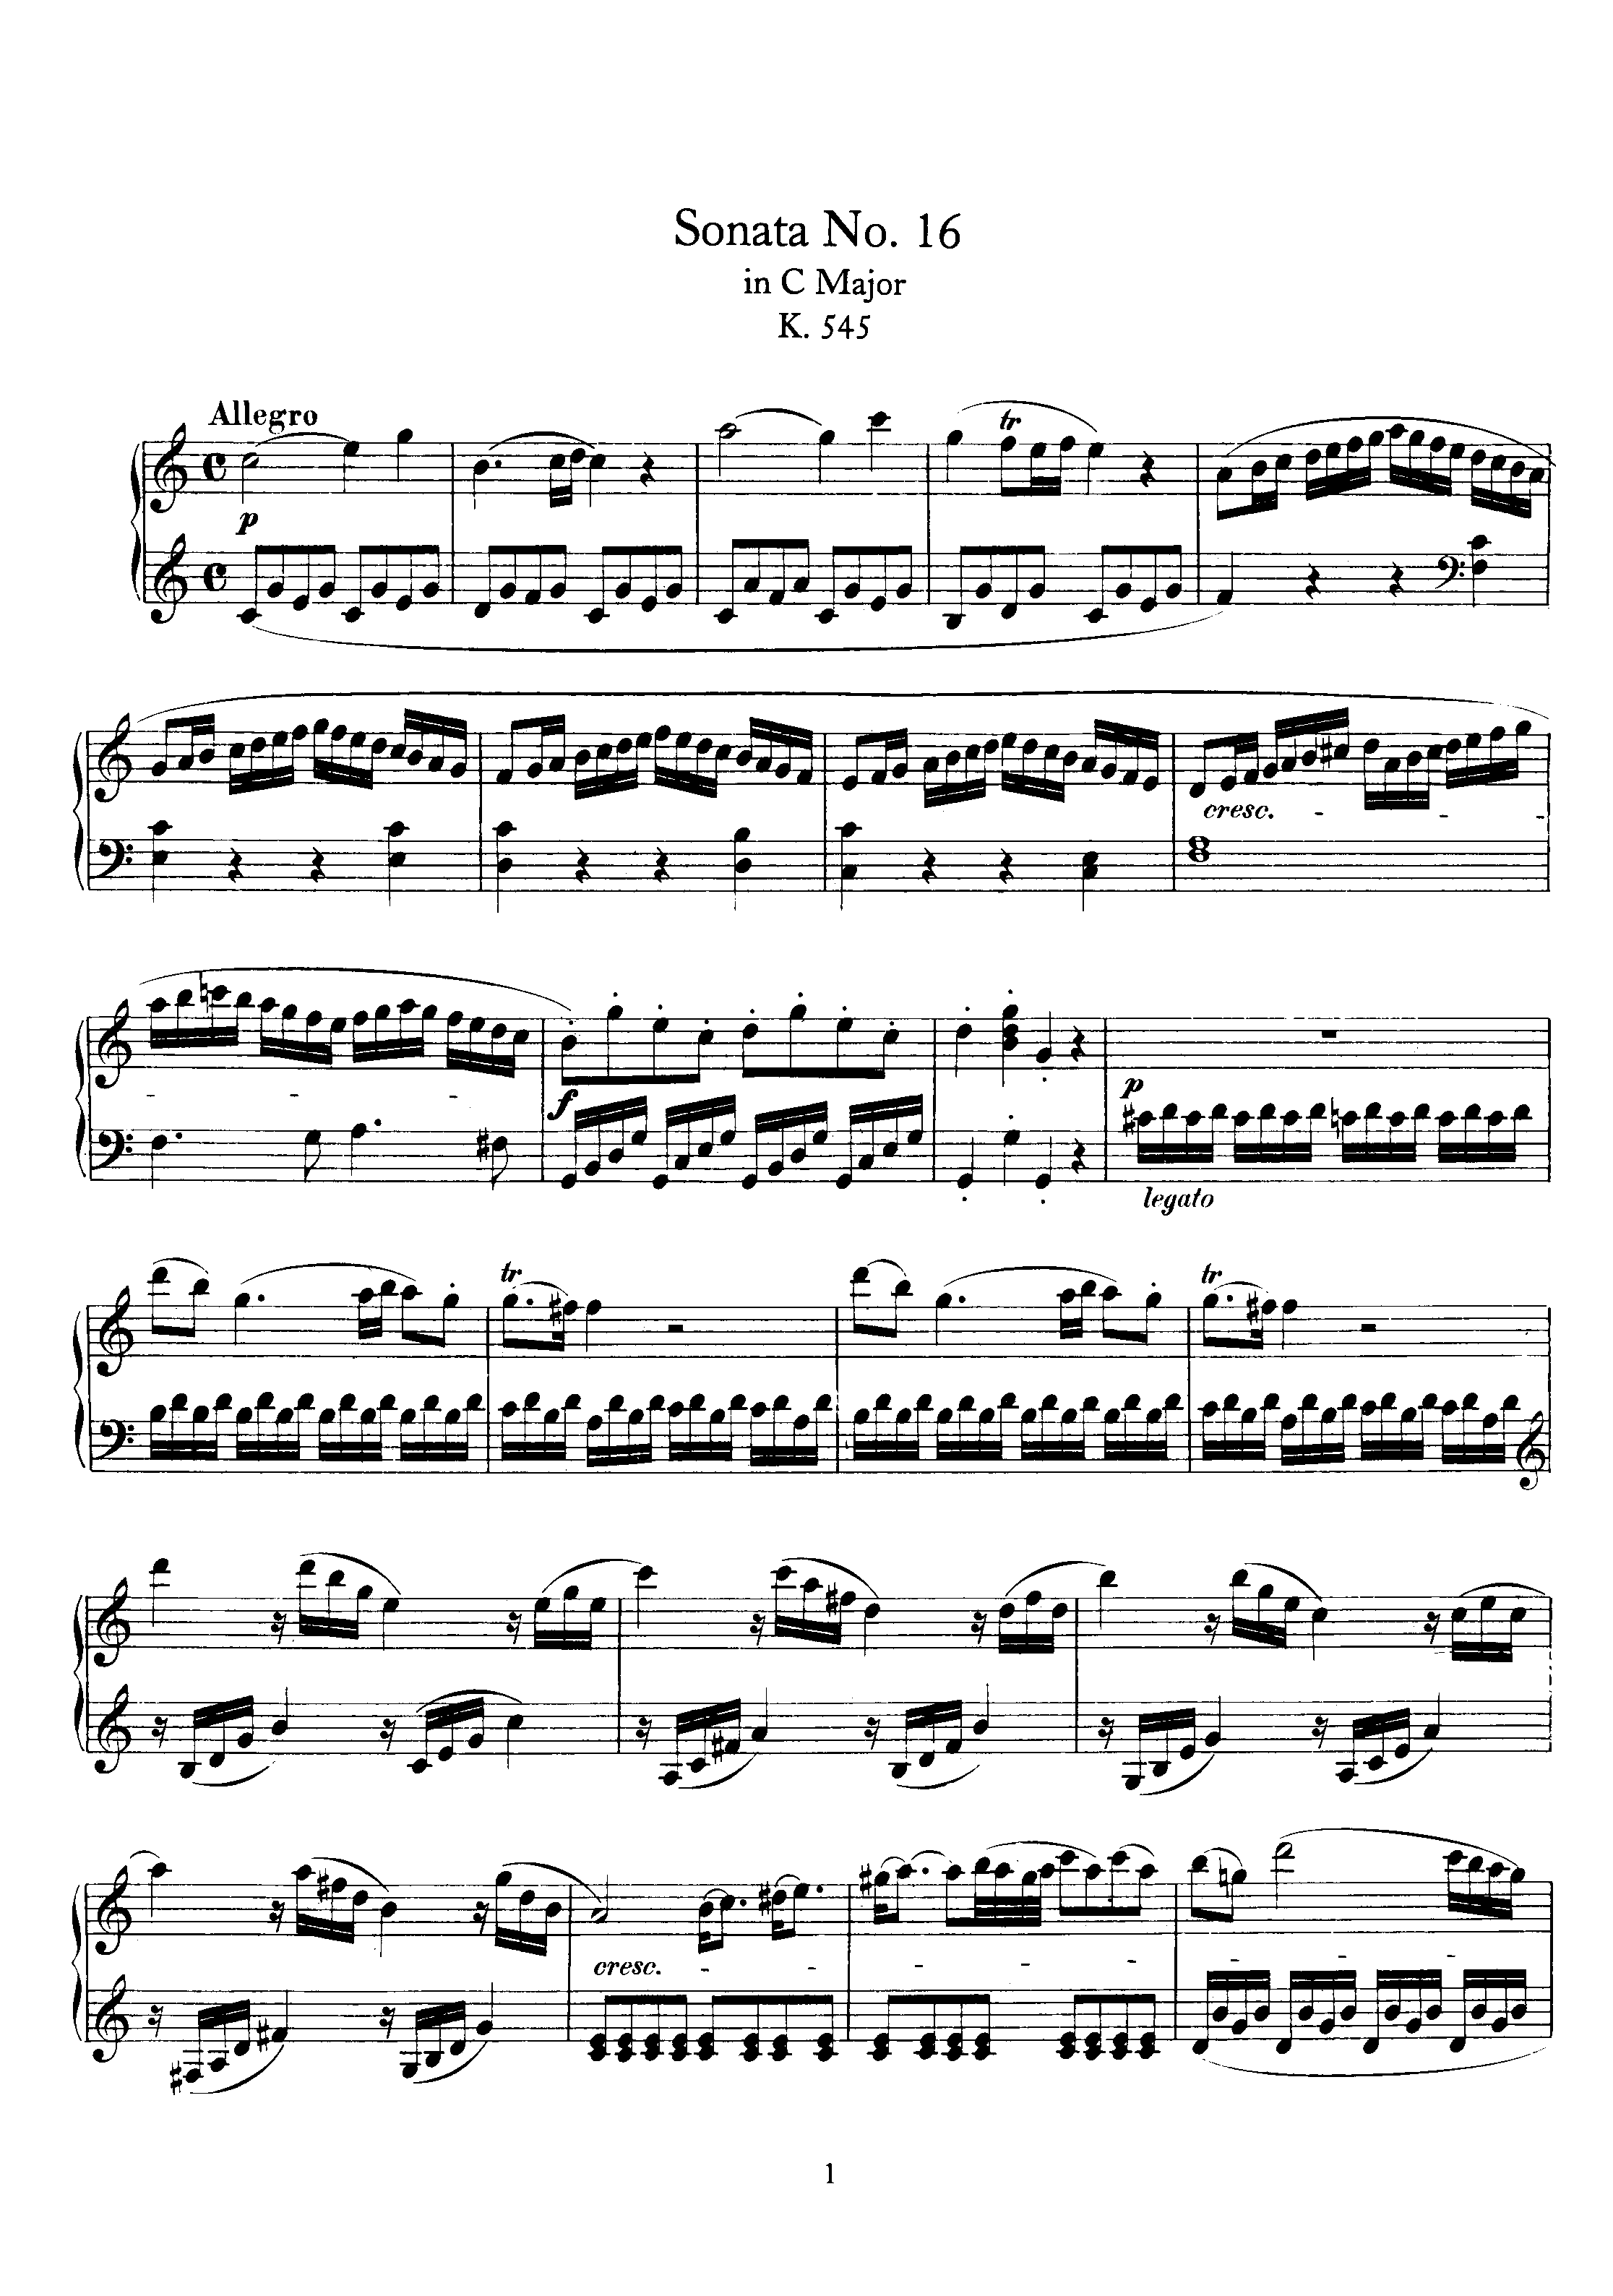 Piano Sonata No. 16 k545 all movement Score